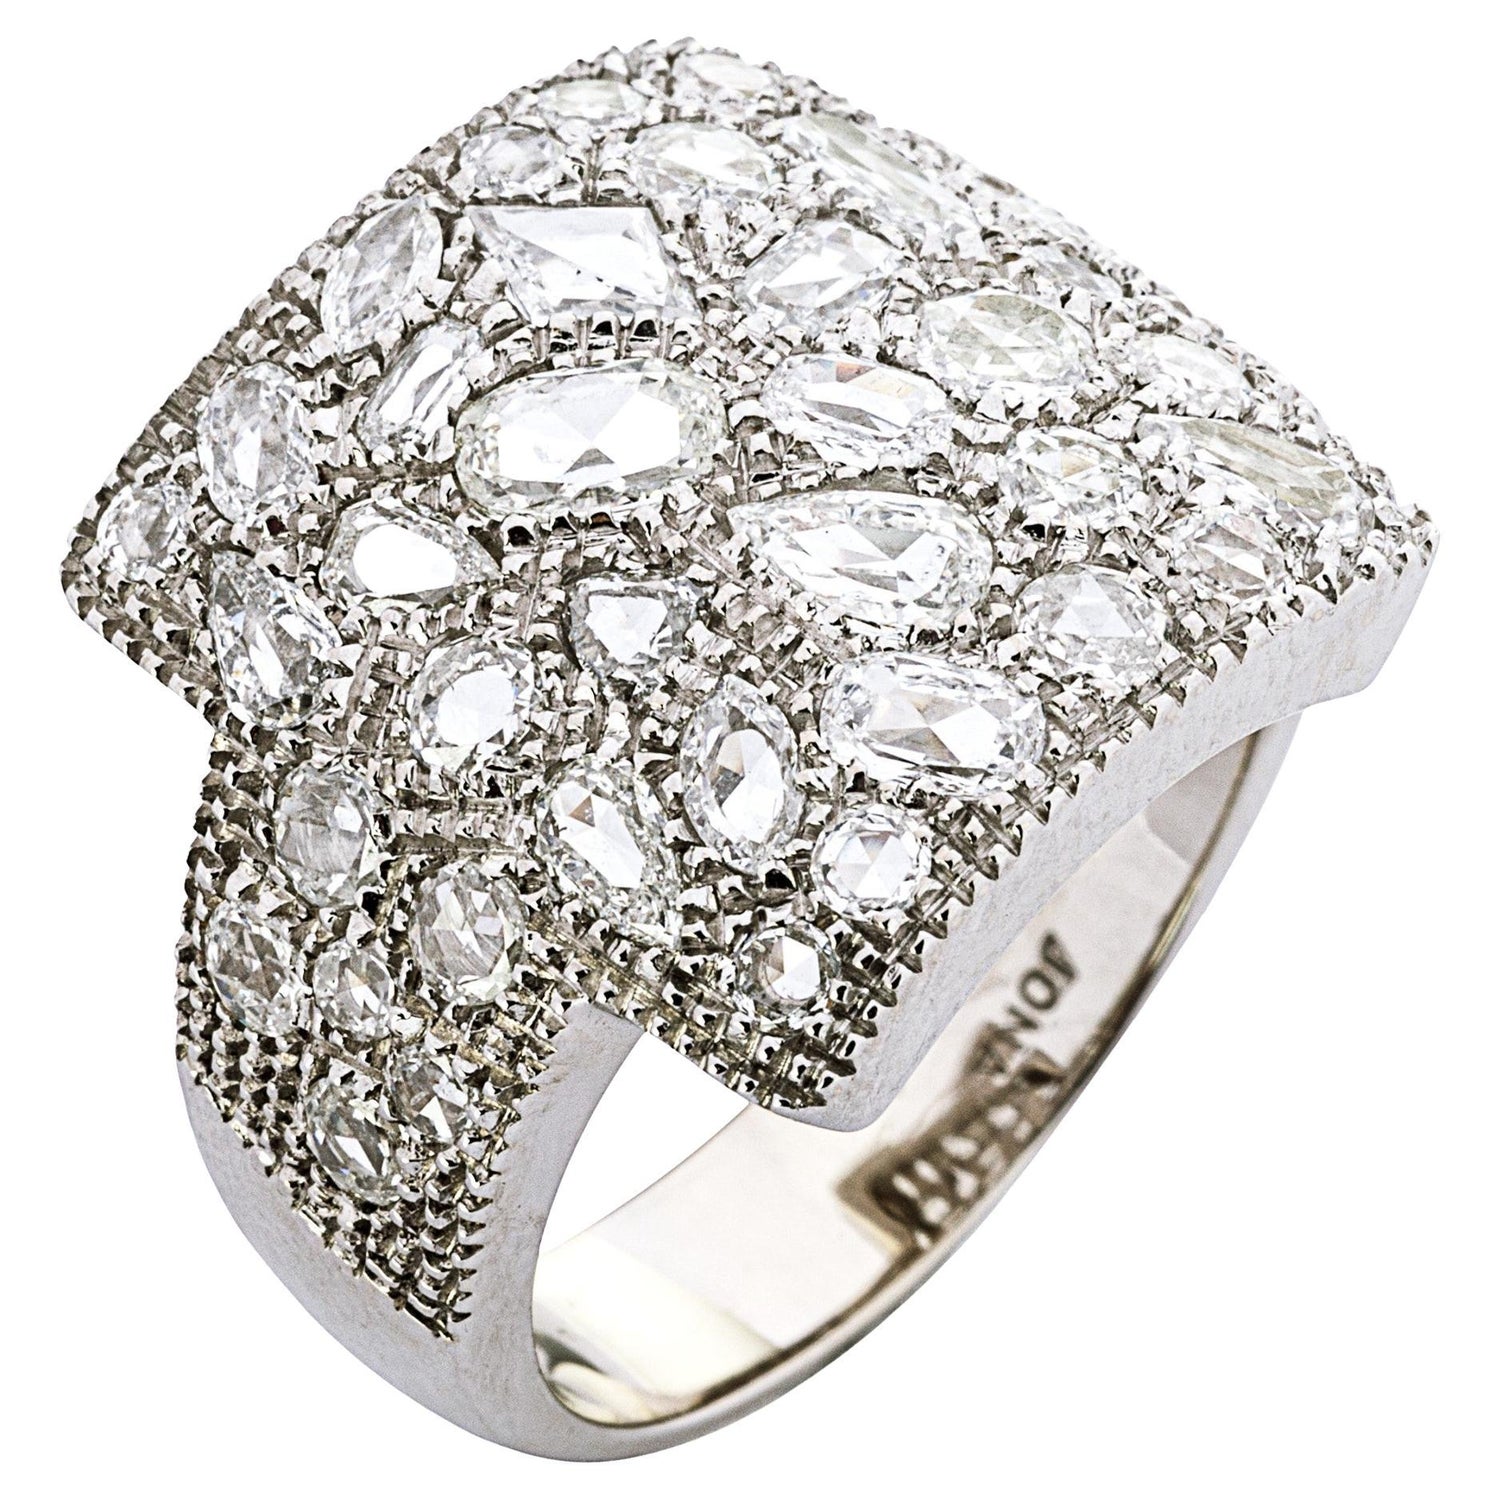 Blüten-Ring mit schwarzen Diamantrosen und weißen Brillanten 1,66